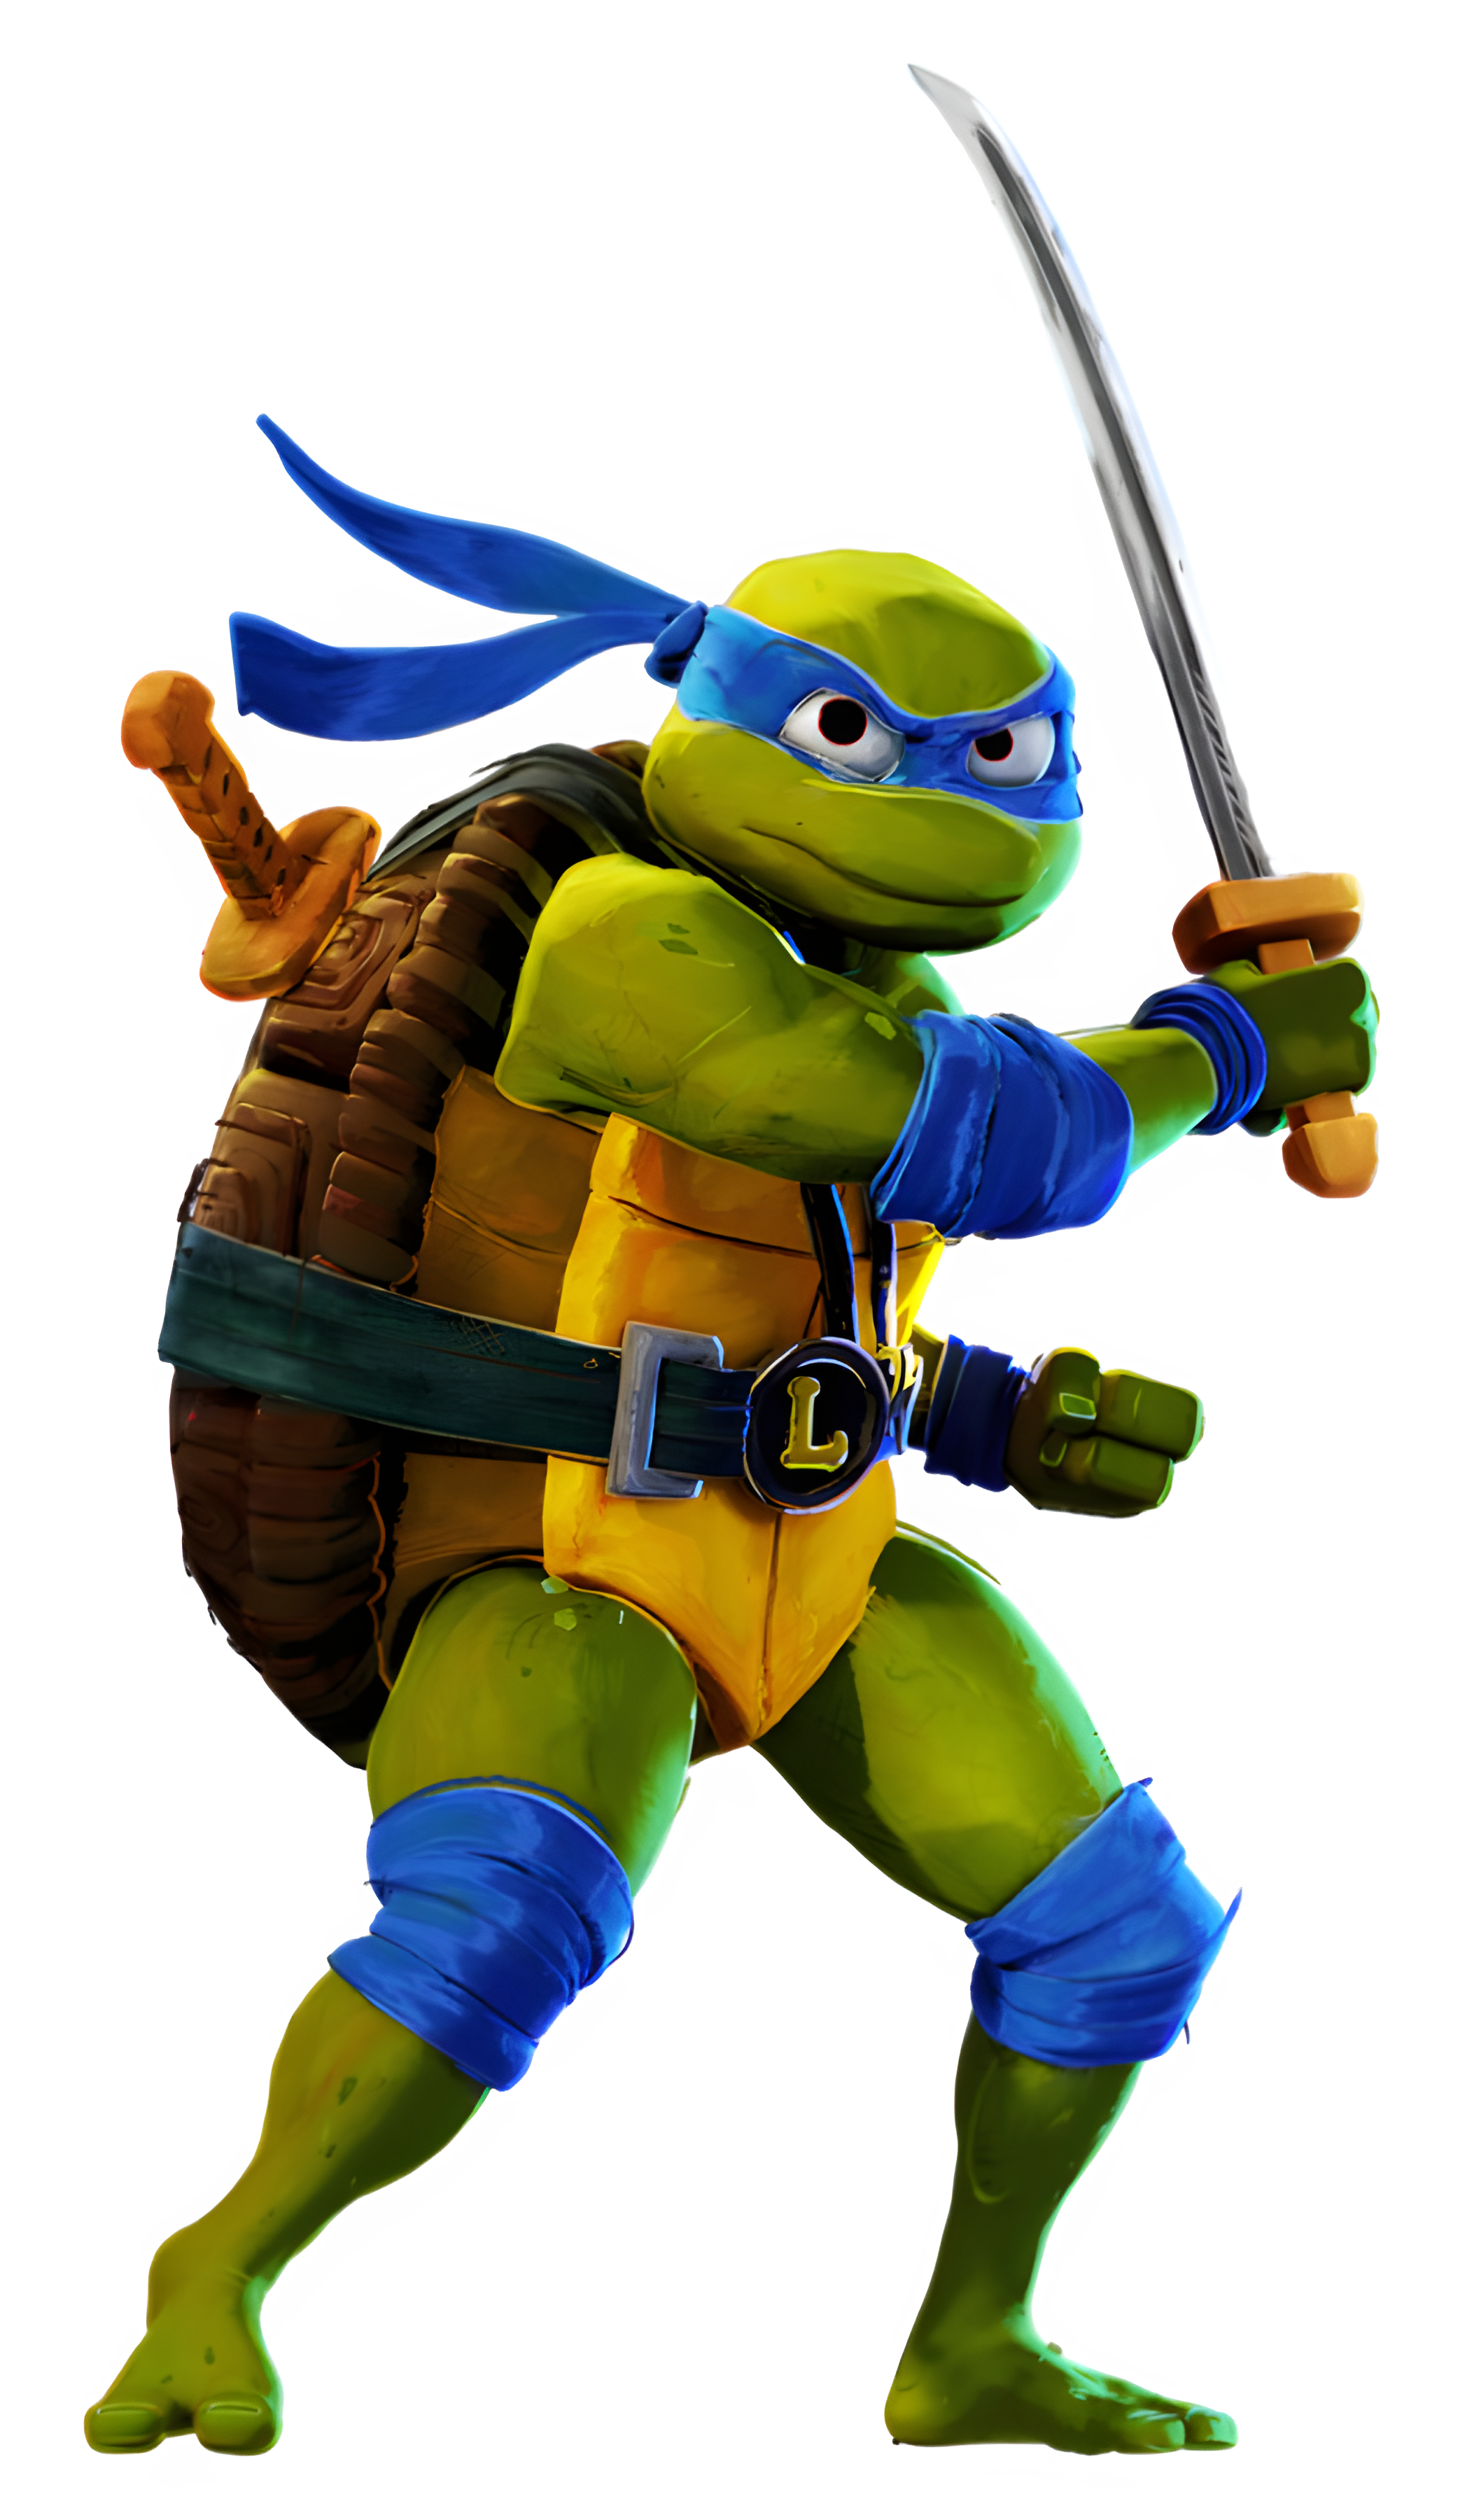 Leonardo (Teenage Mutant Ninja Turtles: Mutant Mayhem)